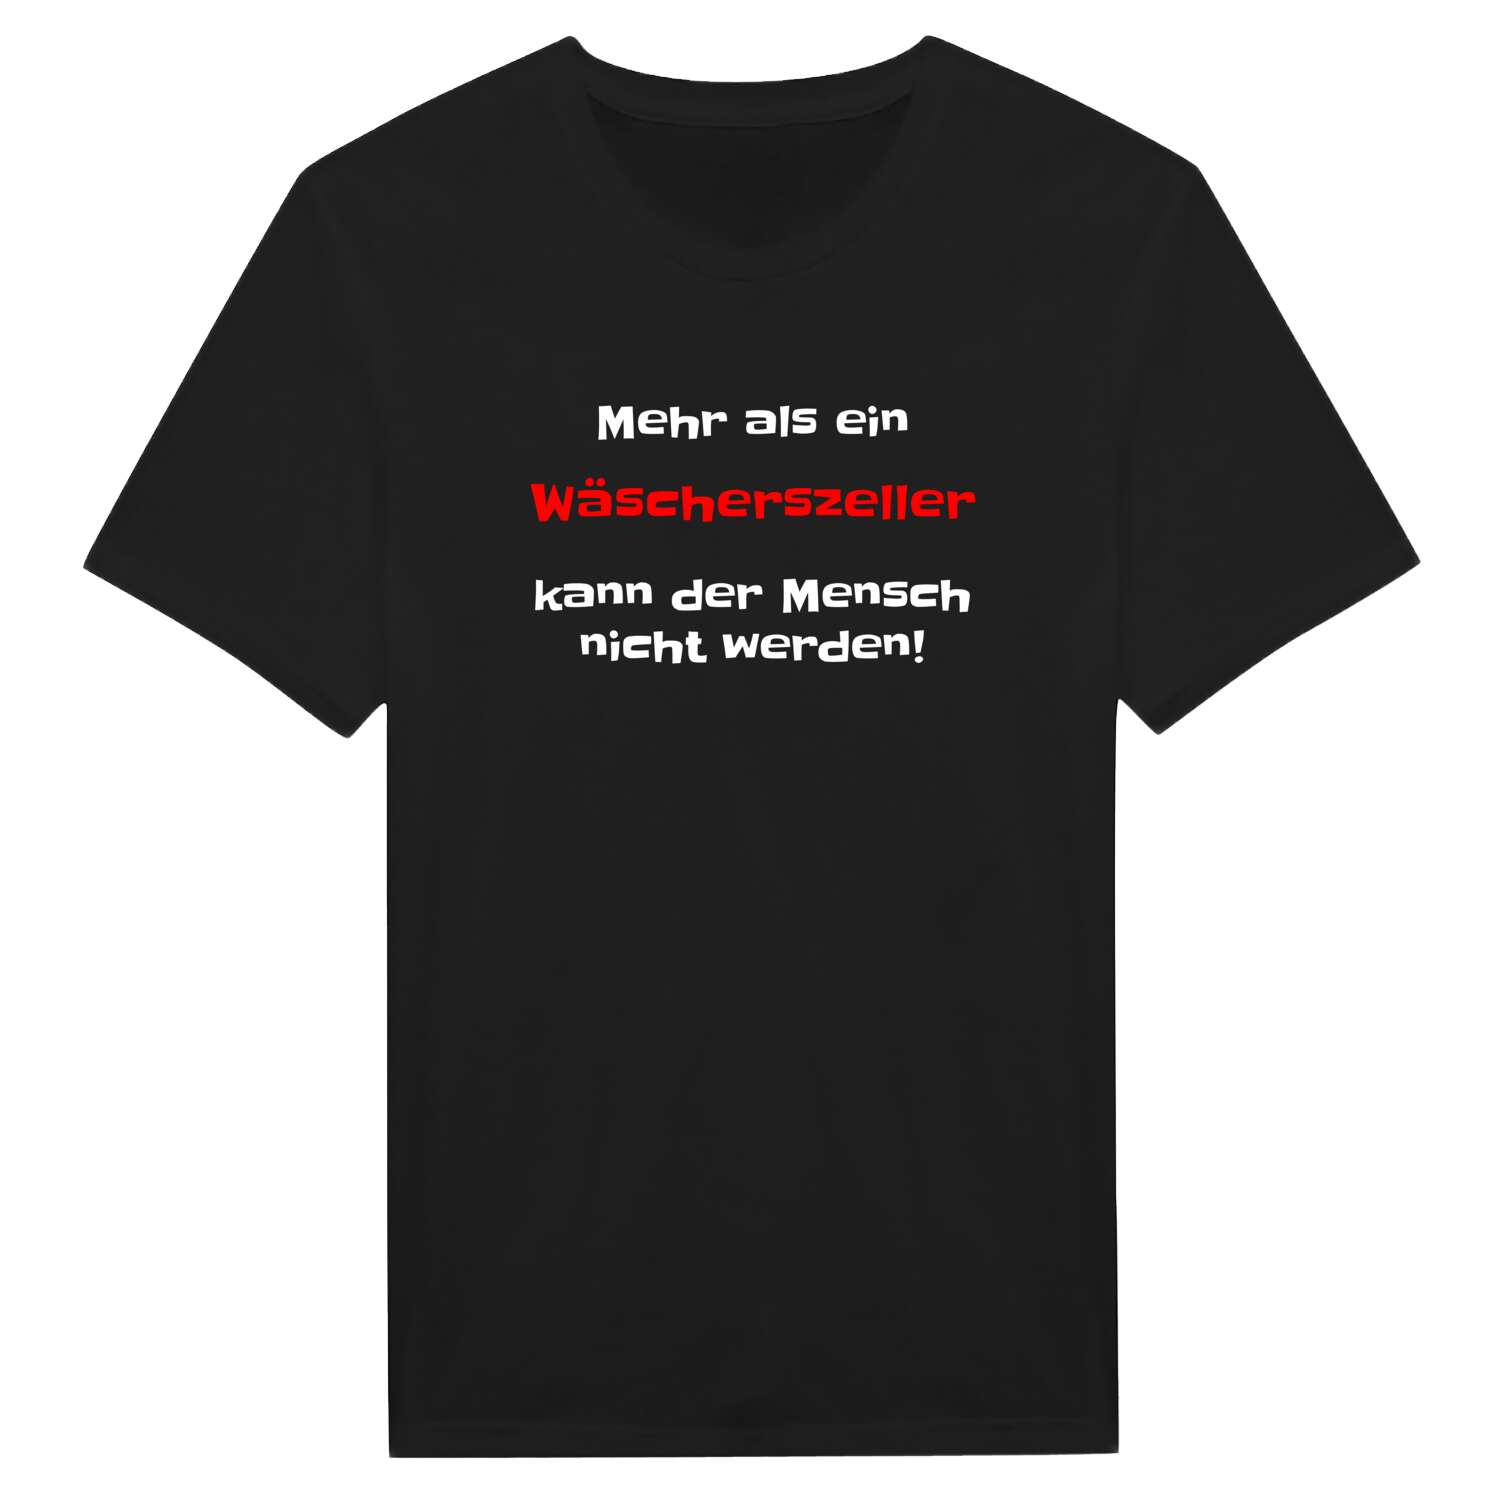 Wäscherszell T-Shirt »Mehr als ein«